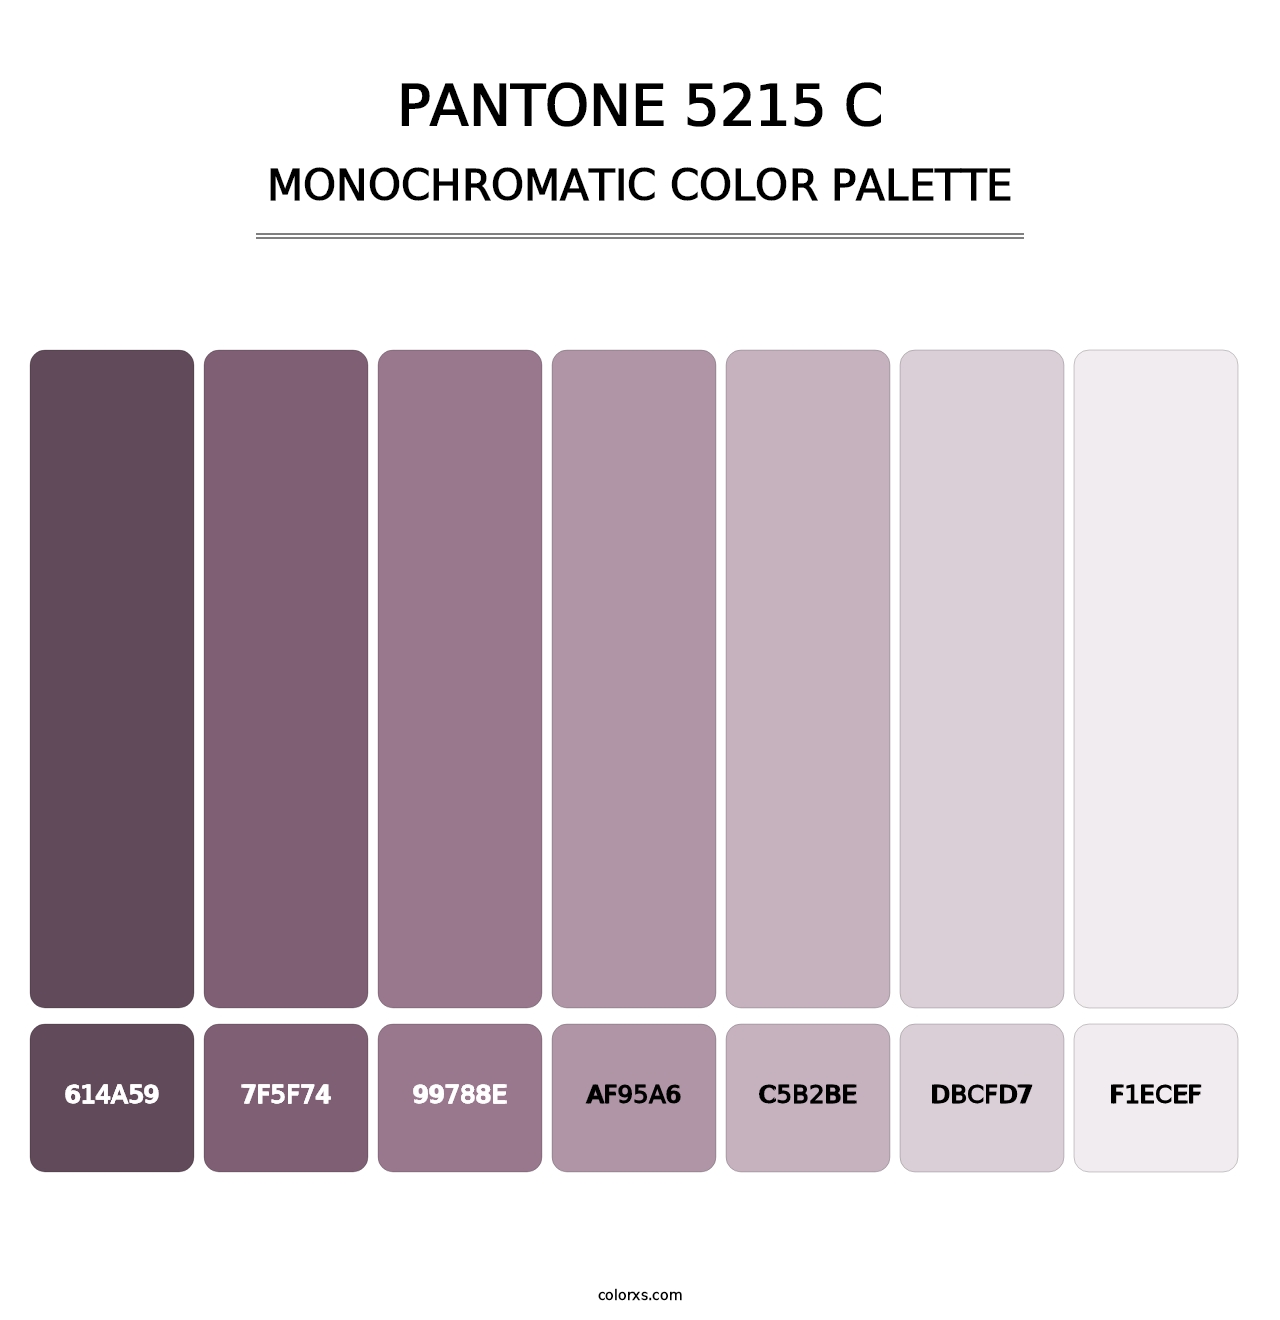 PANTONE 5215 C - Monochromatic Color Palette